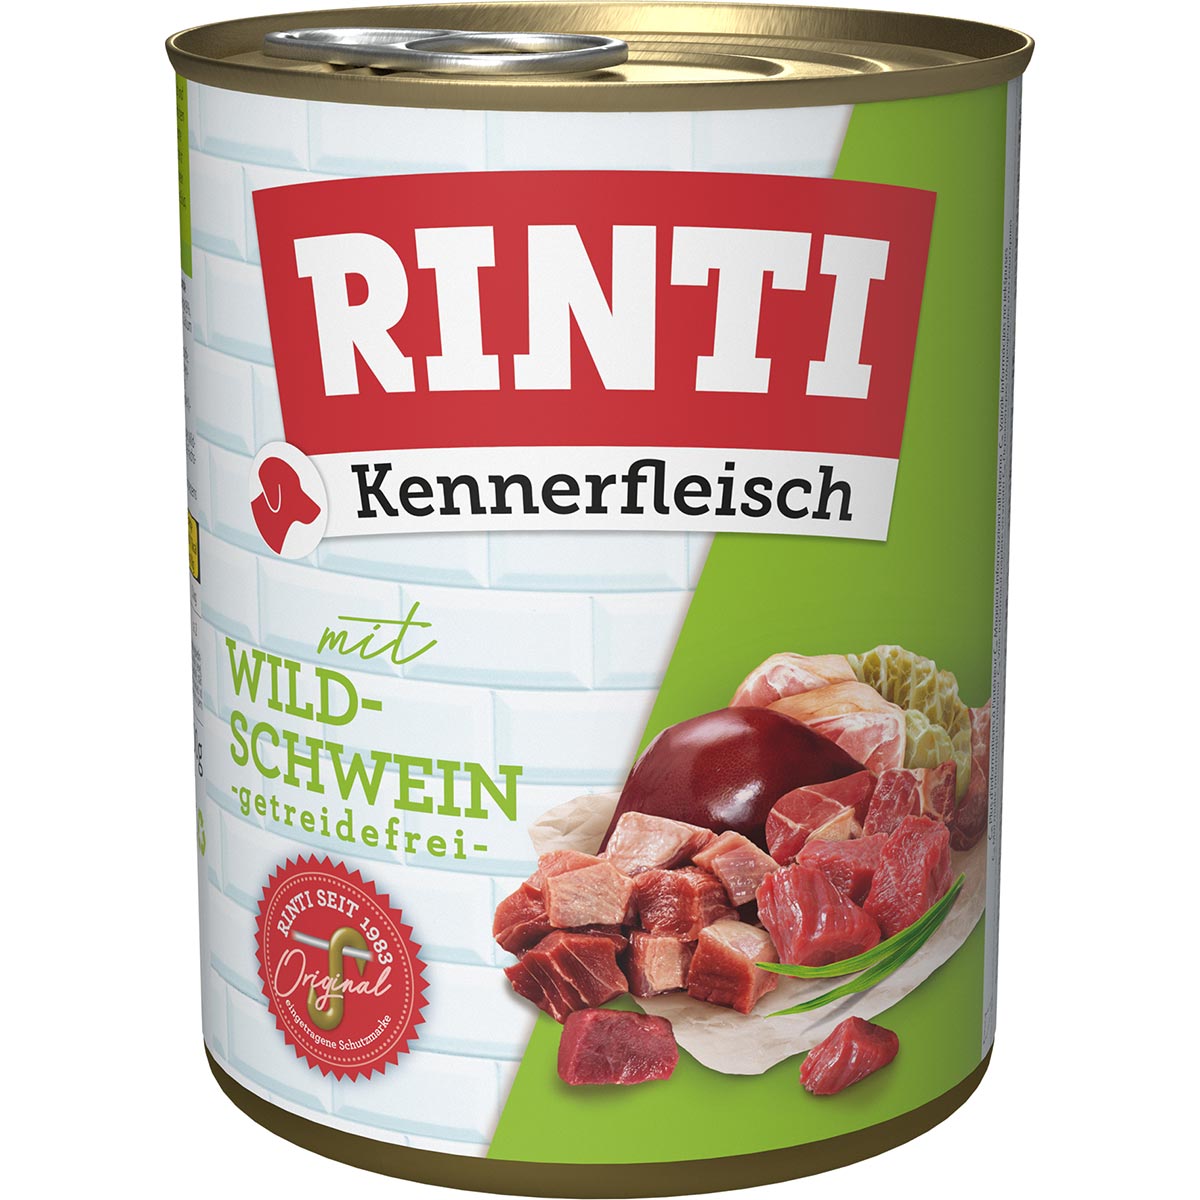 Rinti Kennerfleisch Wildschwein 12x800g von Rinti